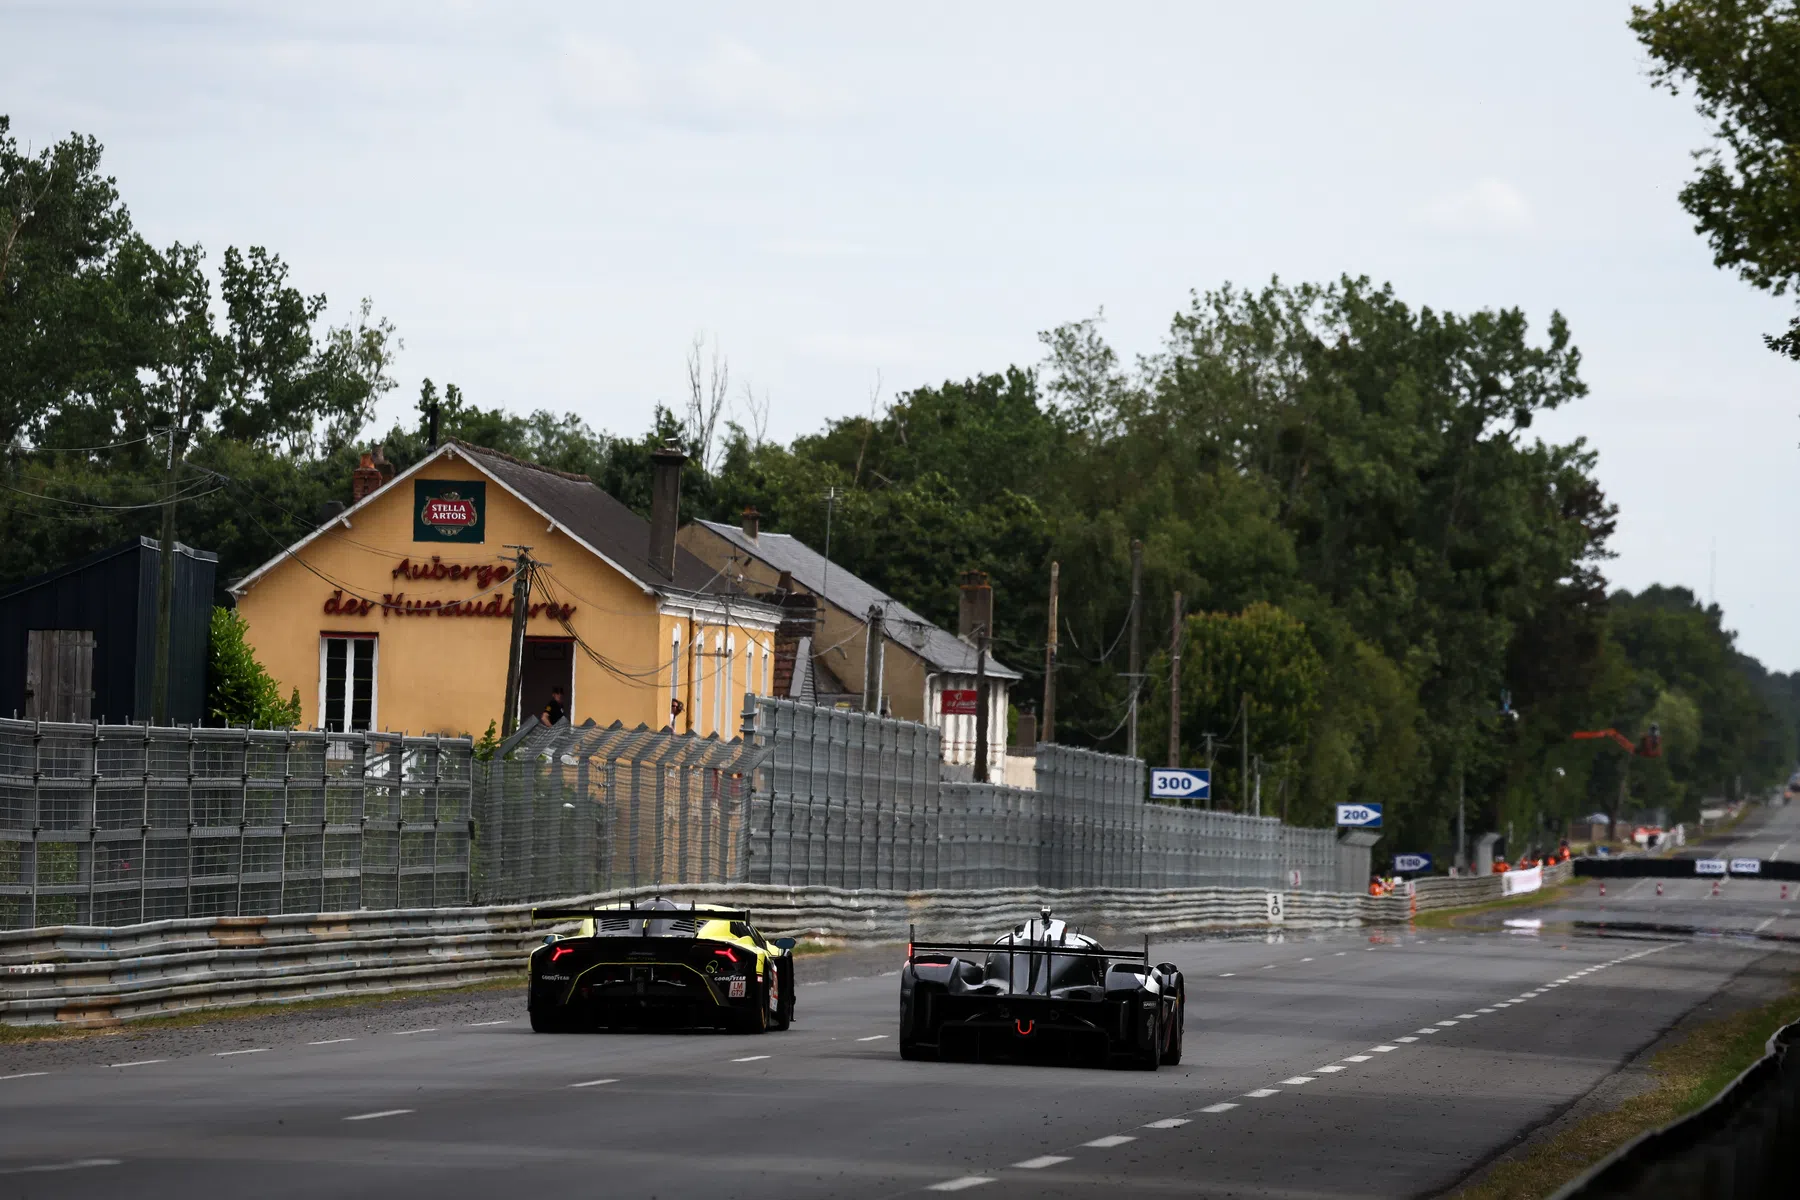 F1 Today | Le Mans 24 Hours begins, FIA receive backlash, Horner comments